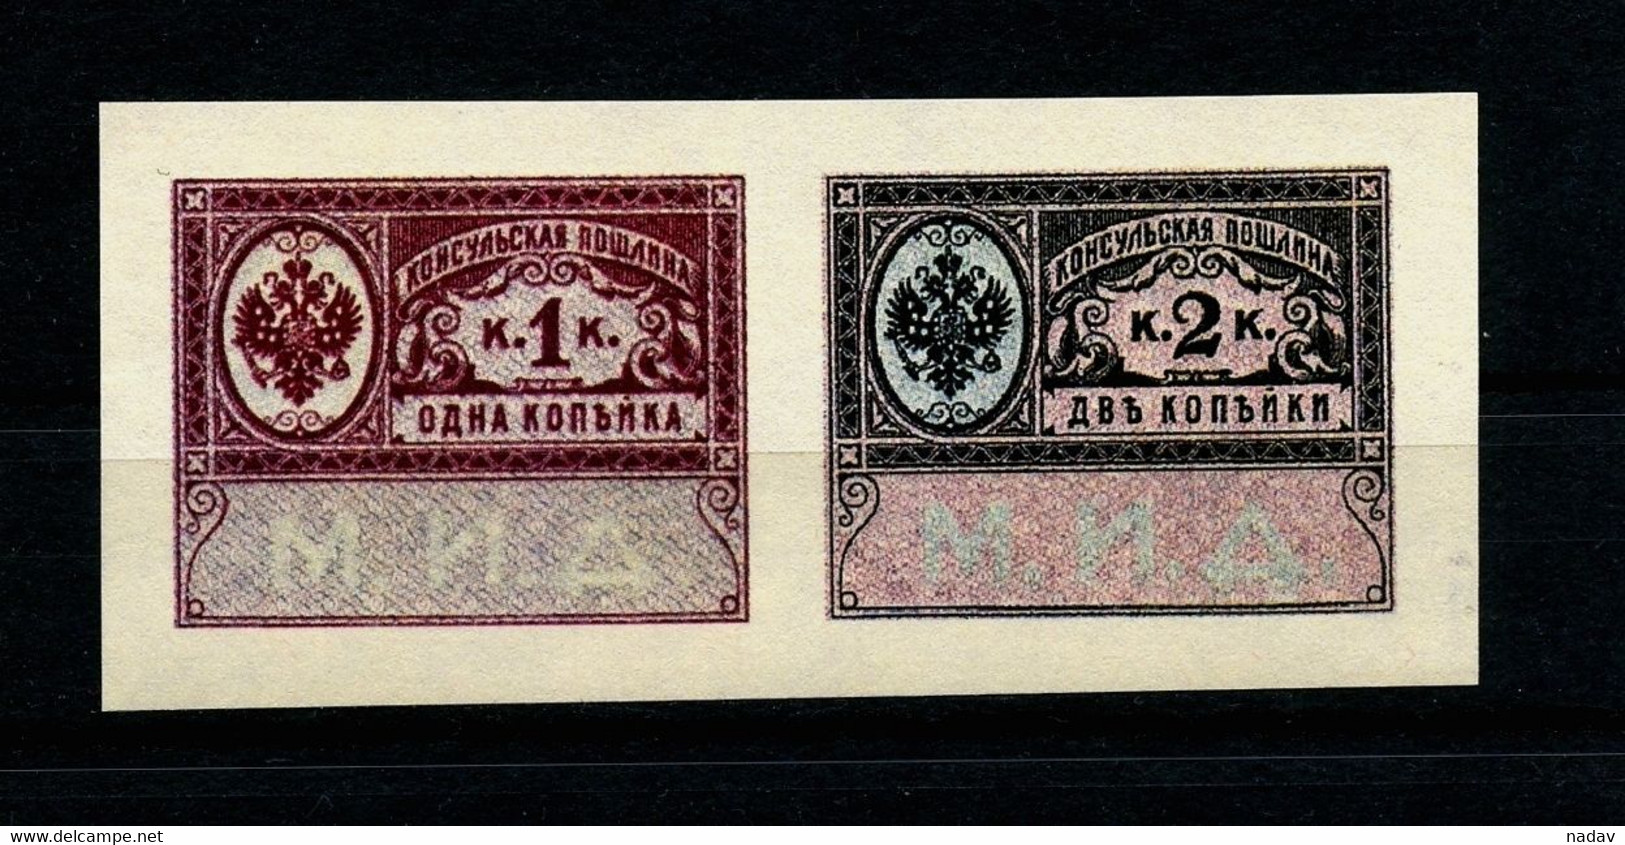 Russia -1913- Consular Fee , Imperforate, Reprint, MNH**. - Essais & Réimpressions